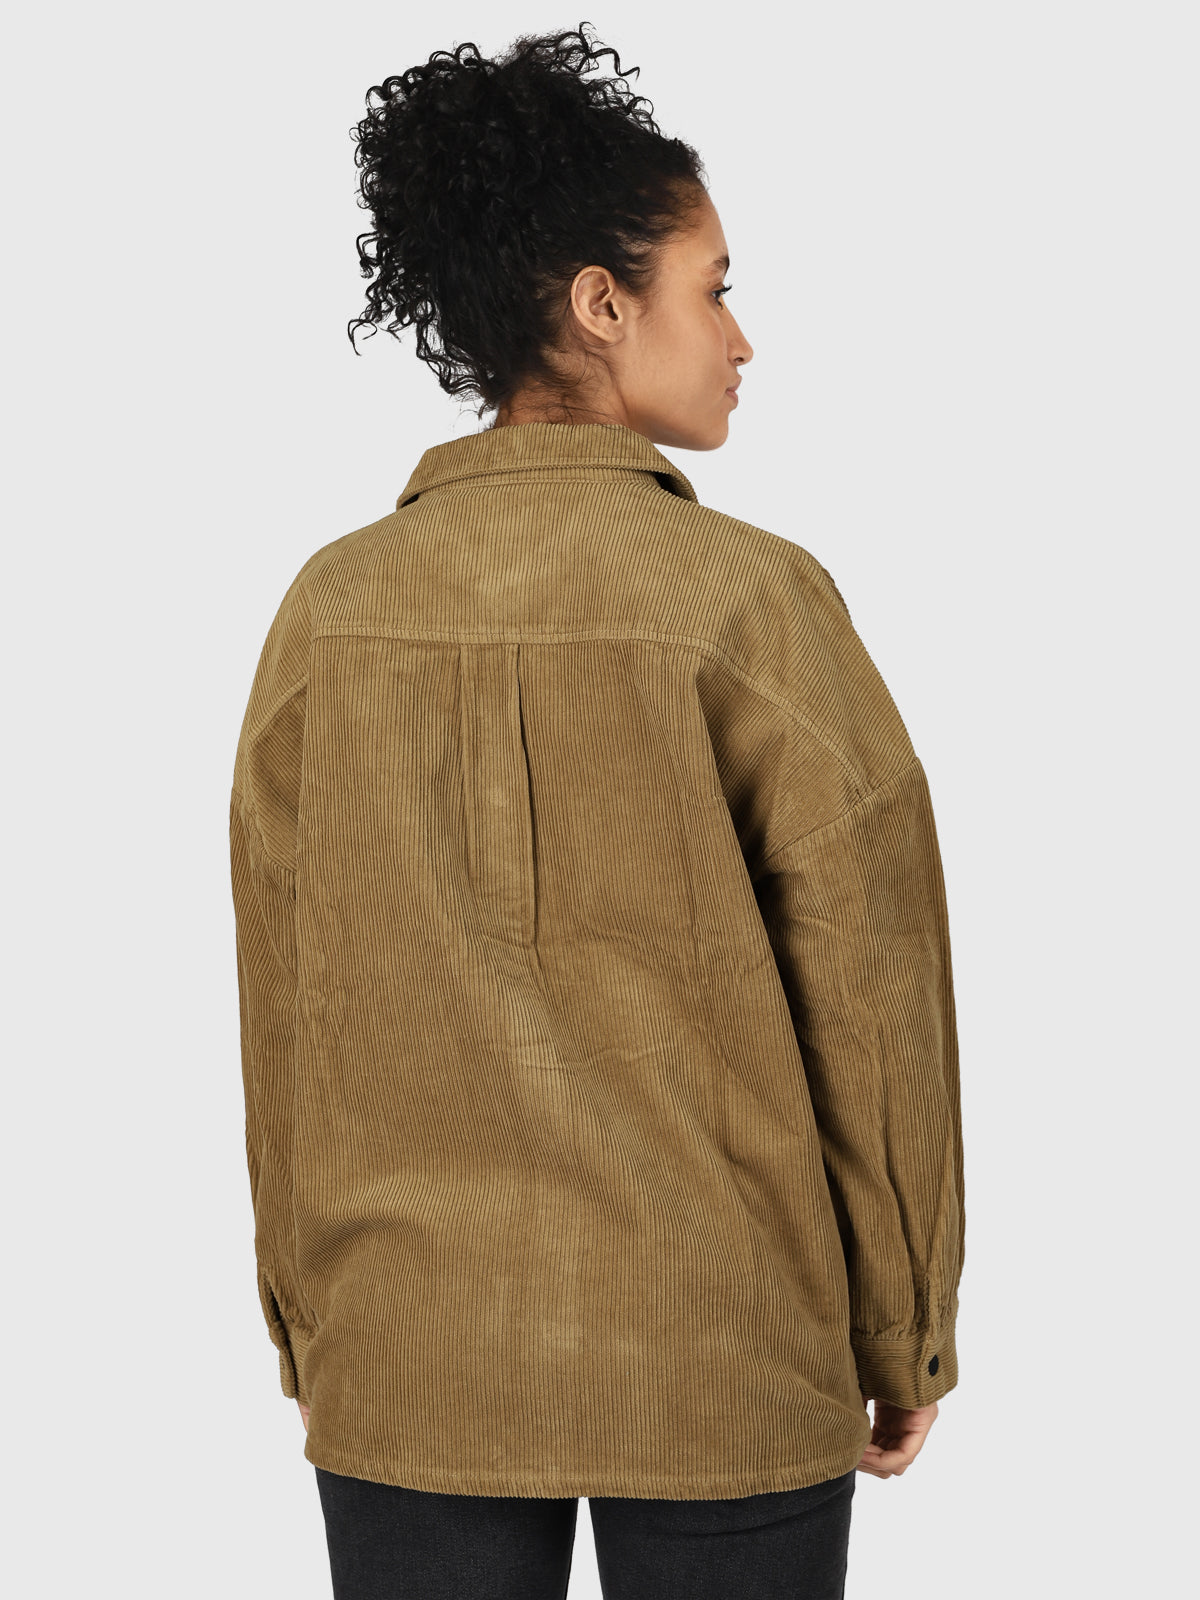 Sian-Cord-R Women Corduroy Shirt | Brown